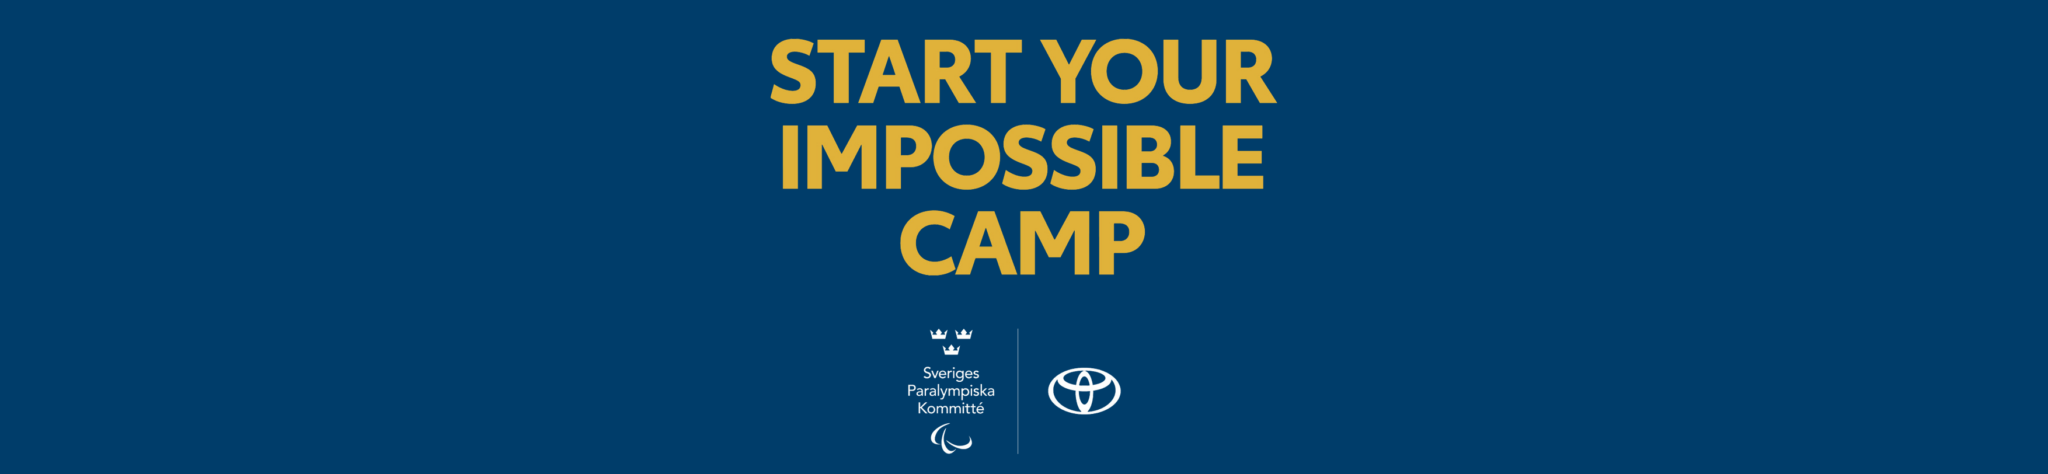 Start Your Impossible Camp i Gävle 17-19 mars 2023